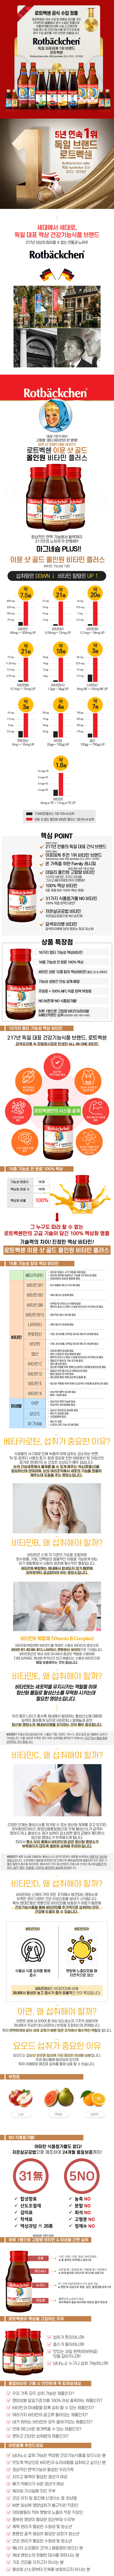 로트벡쉔 이뮨샷 골드 올인원 비타민 플러스 1BOX(10병) - 고함량 멀티 비타민 앰플